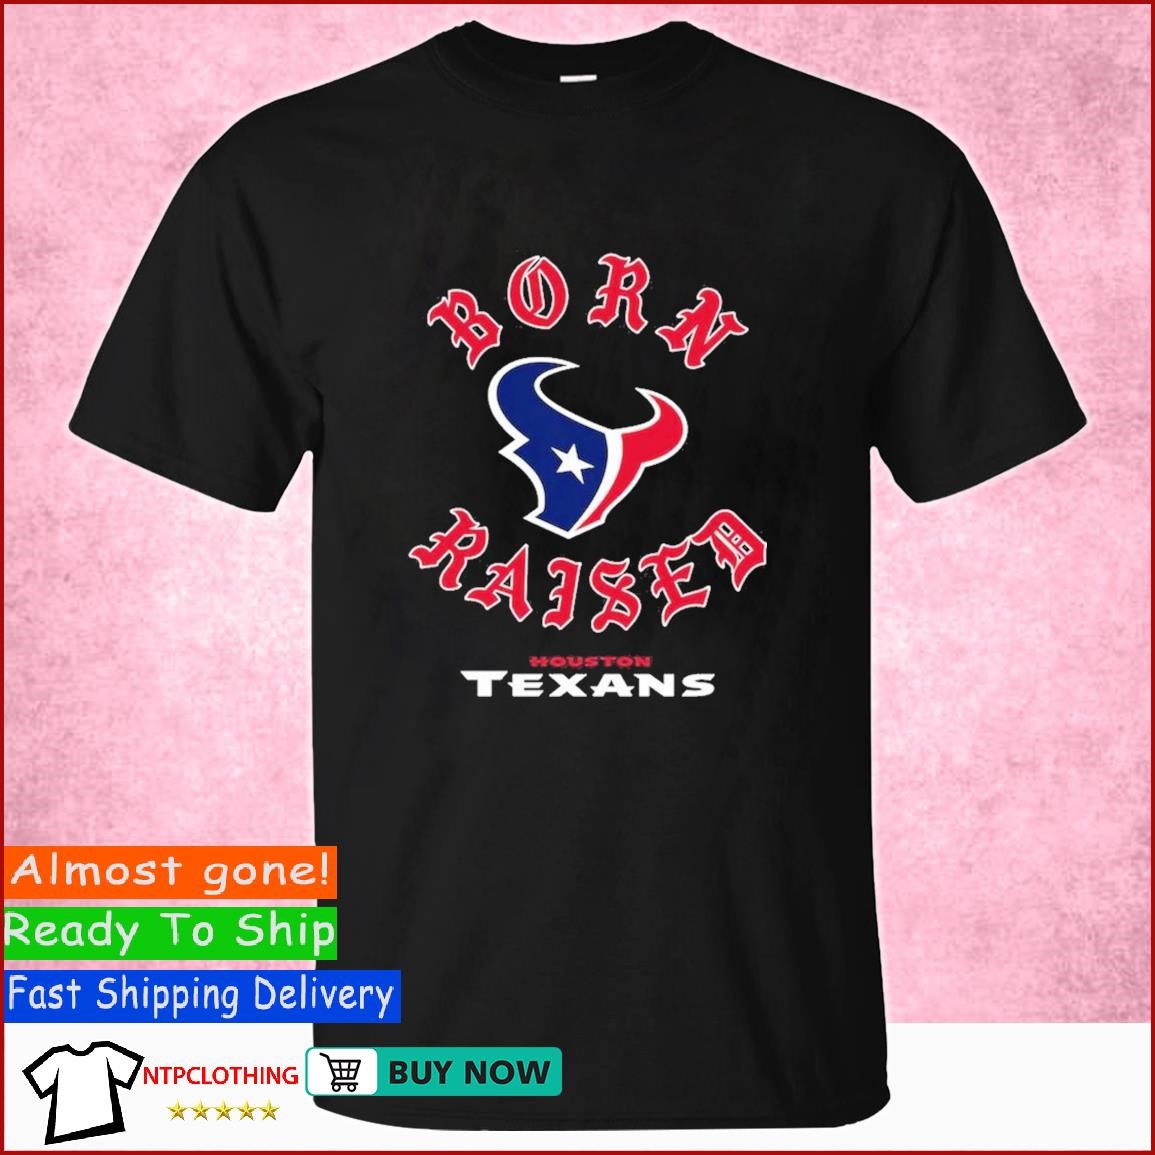 Texas Born & Texas Raised: Texas Born & Texas Raised